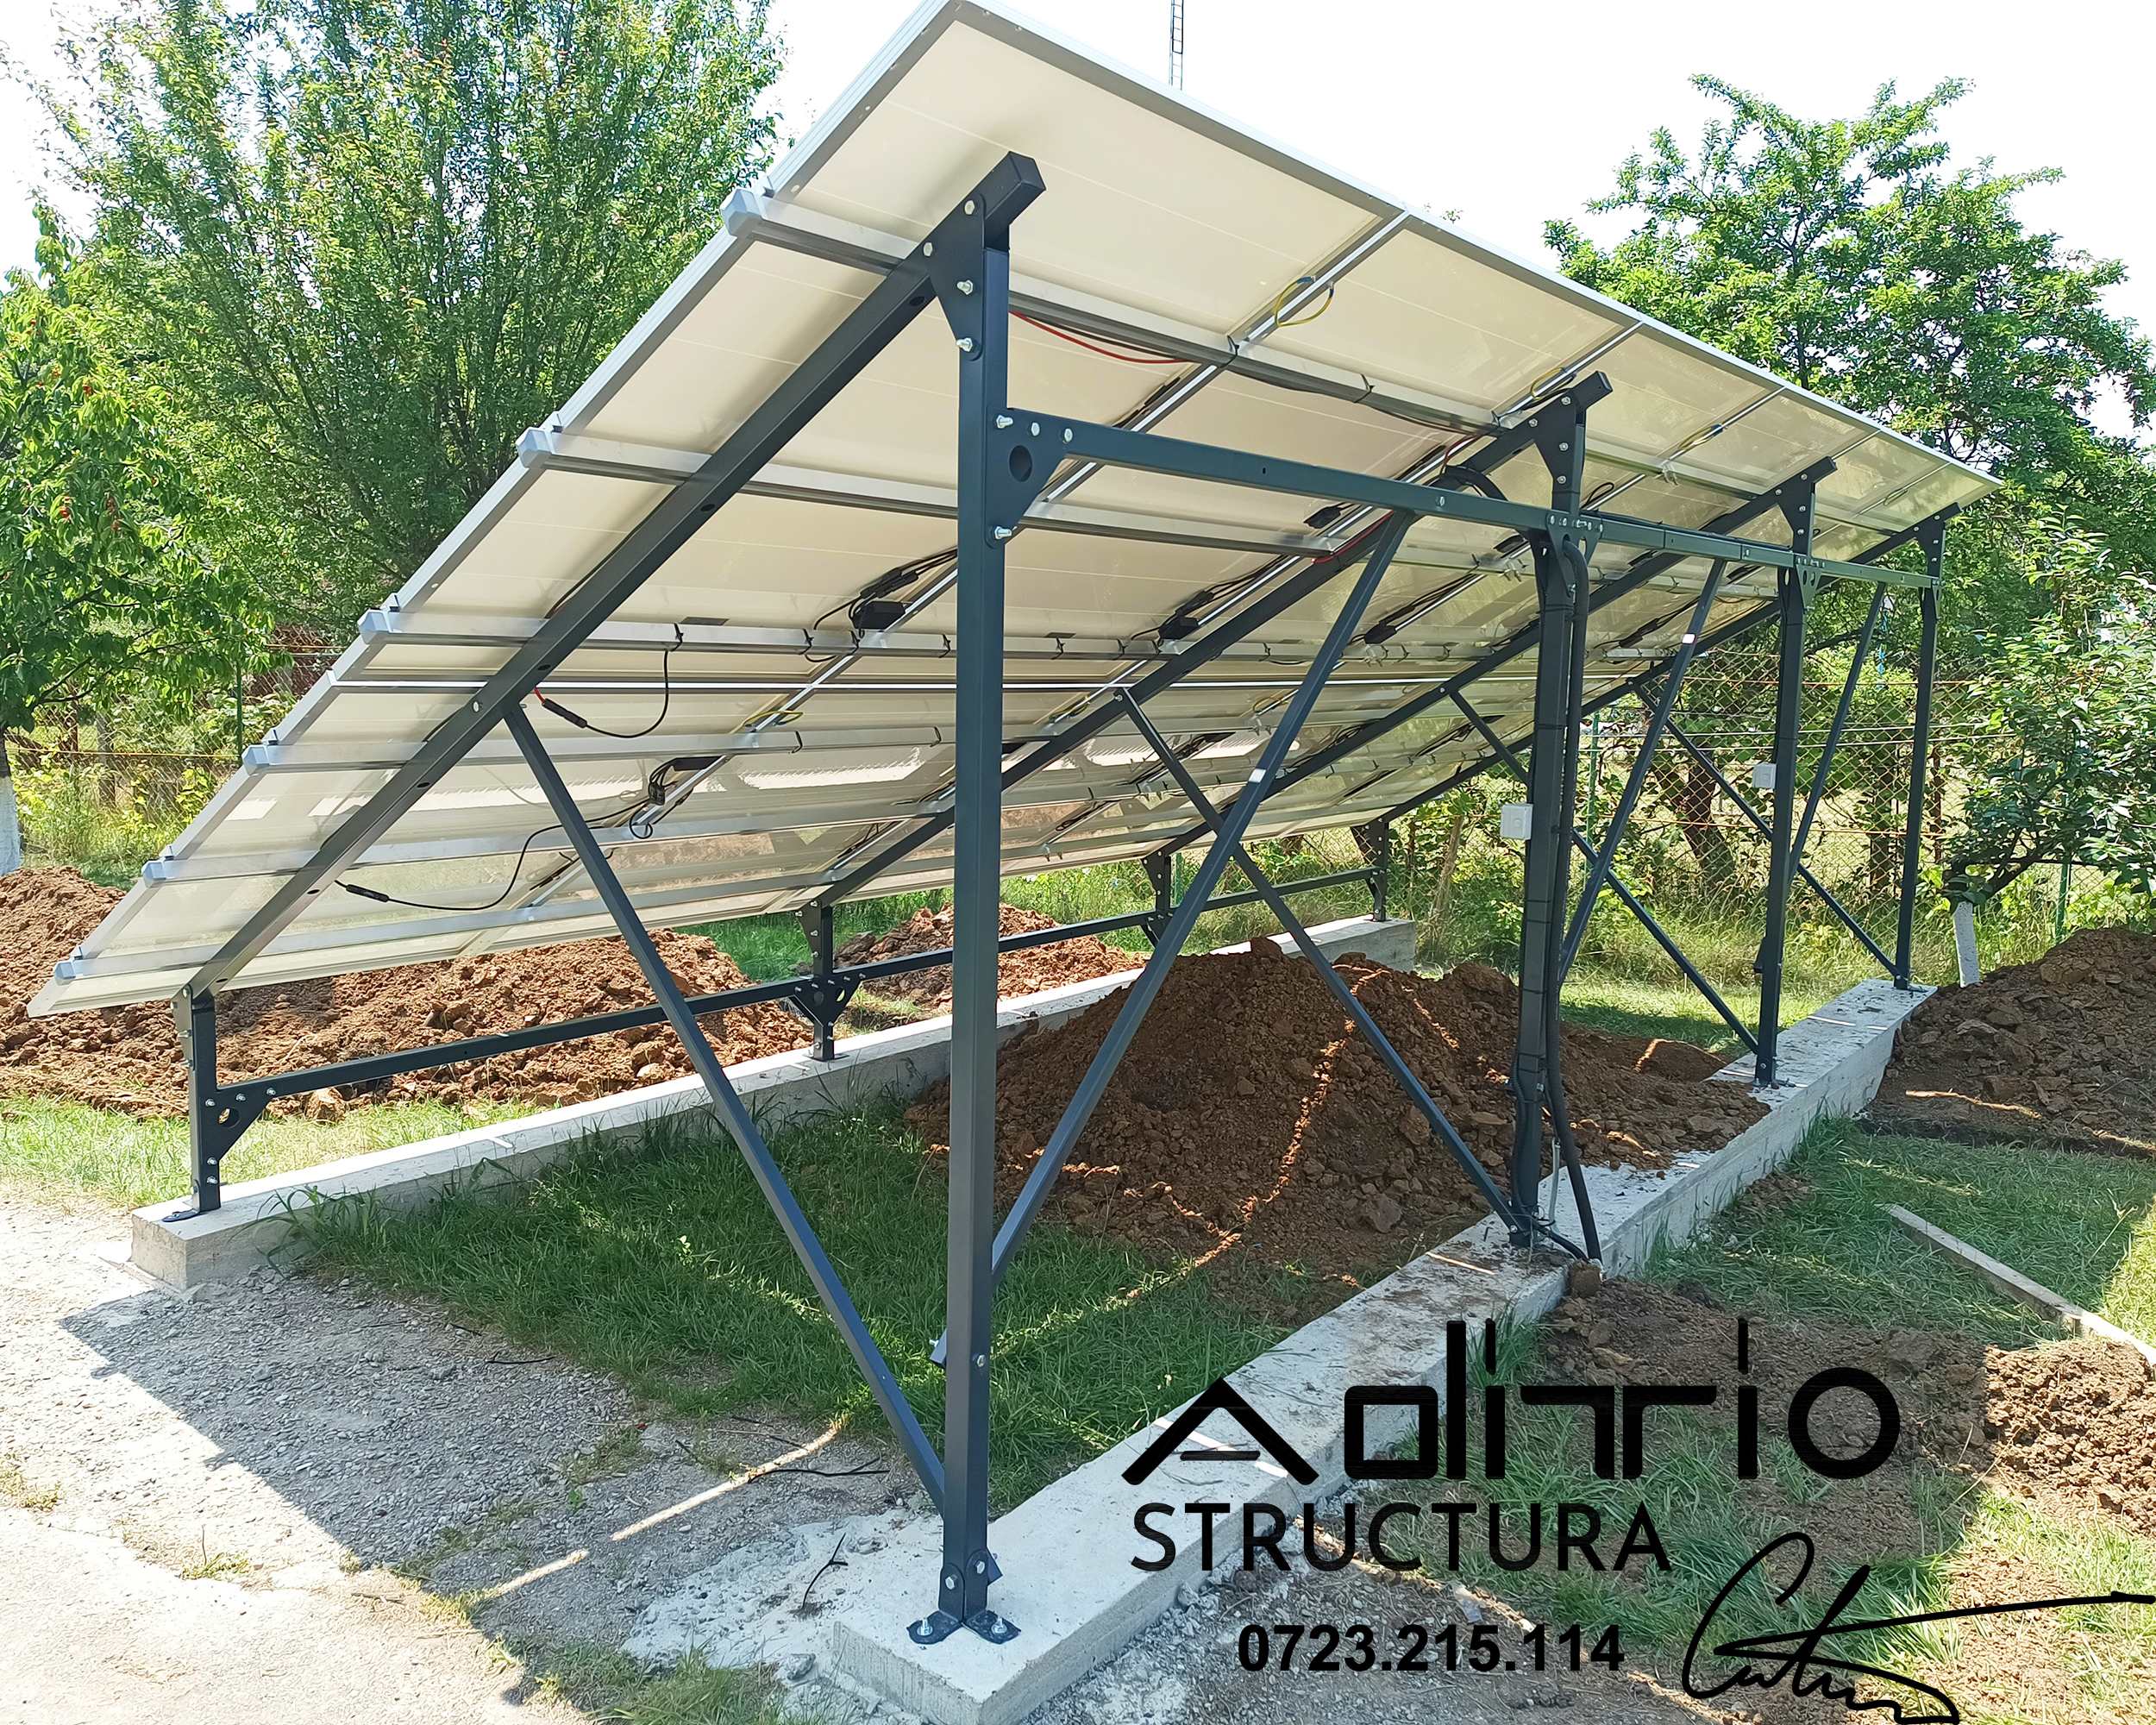 structura metalica la sol pentru panouri fotovoltaice-pe bordura de beton